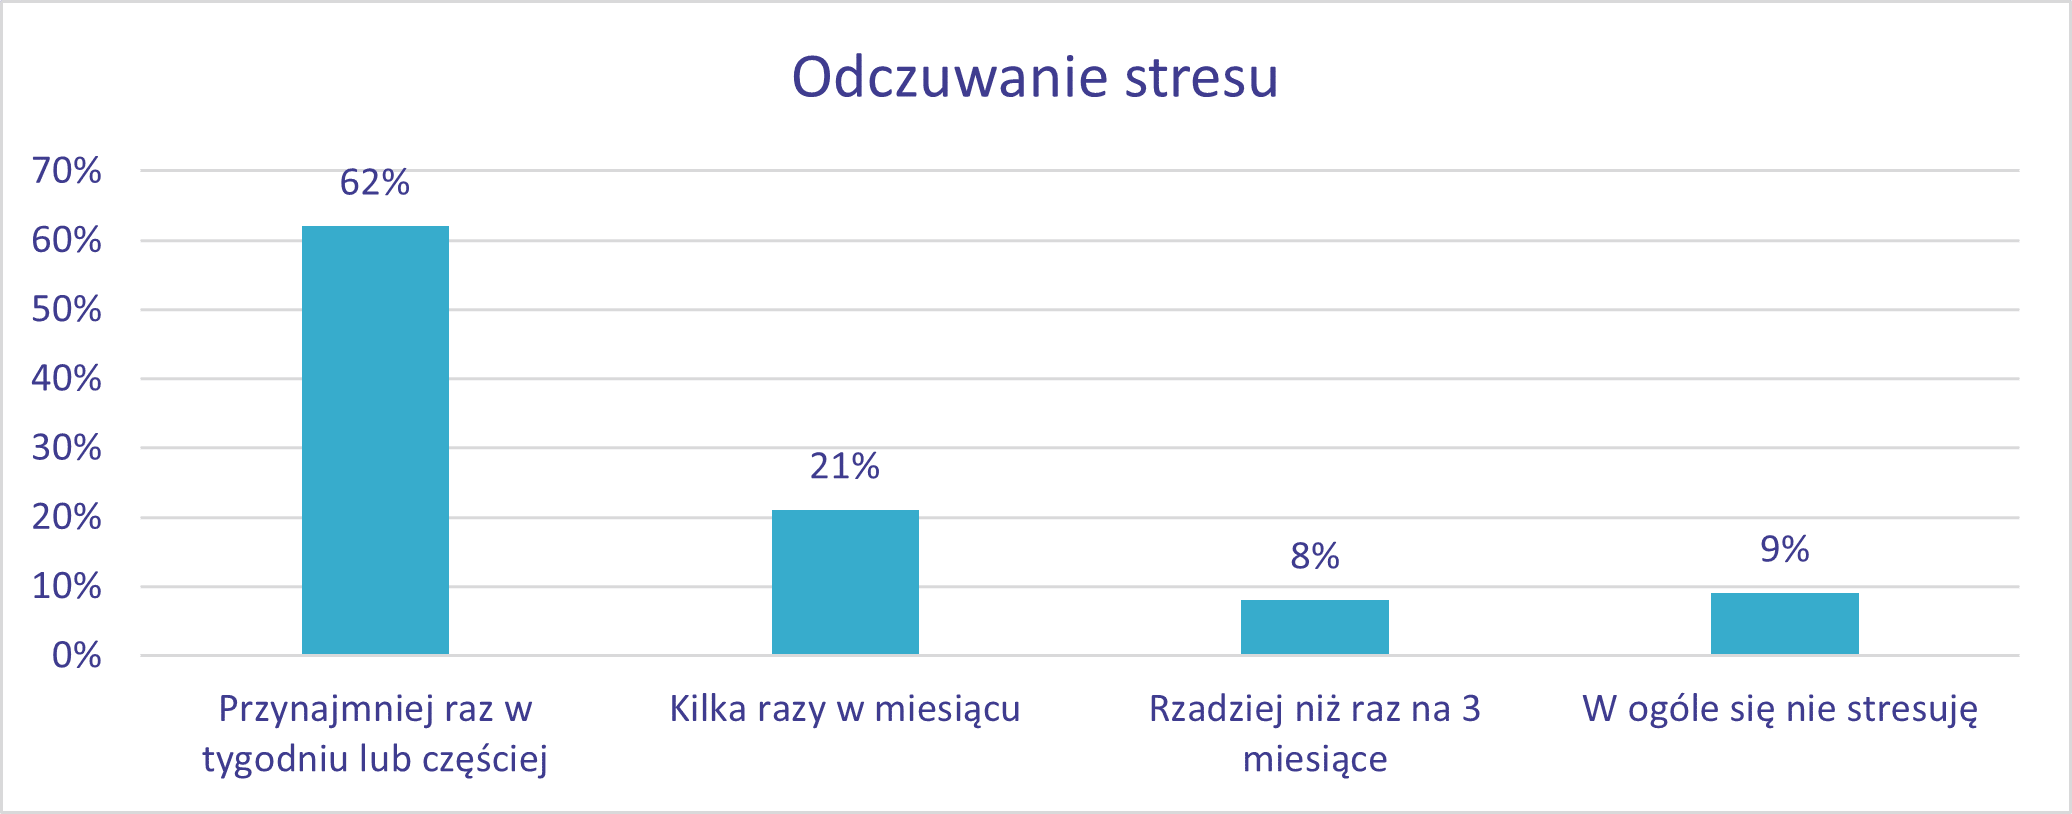 Ponad połowa Polaków stresuje się przynajmniej raz w tygodniu